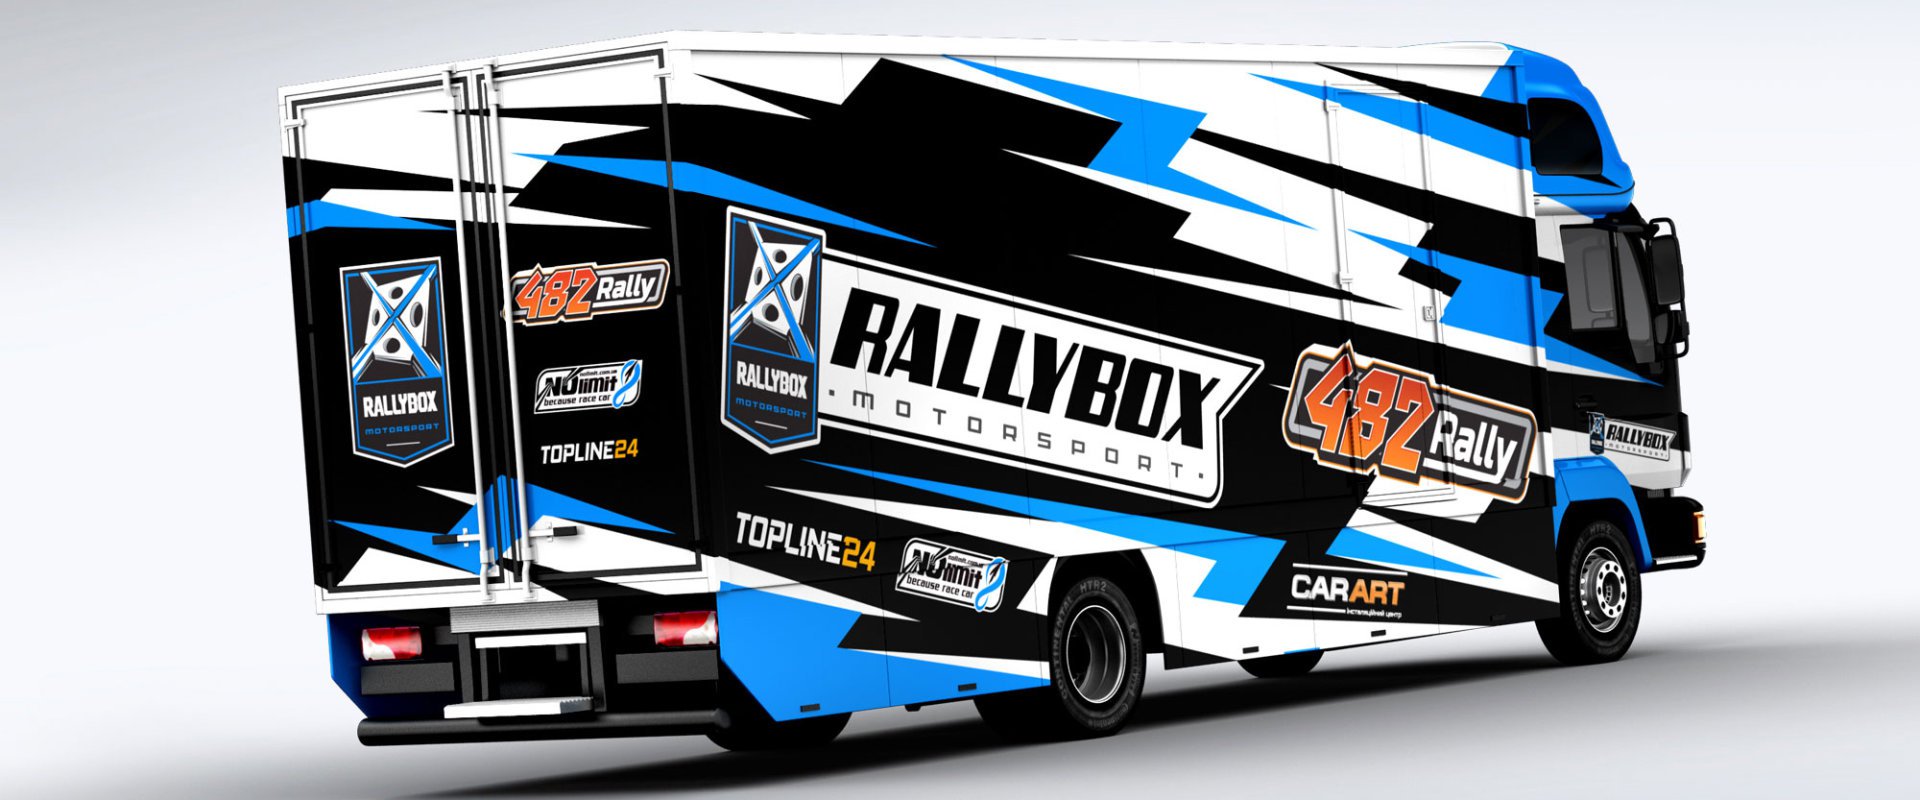 Rally Box #3